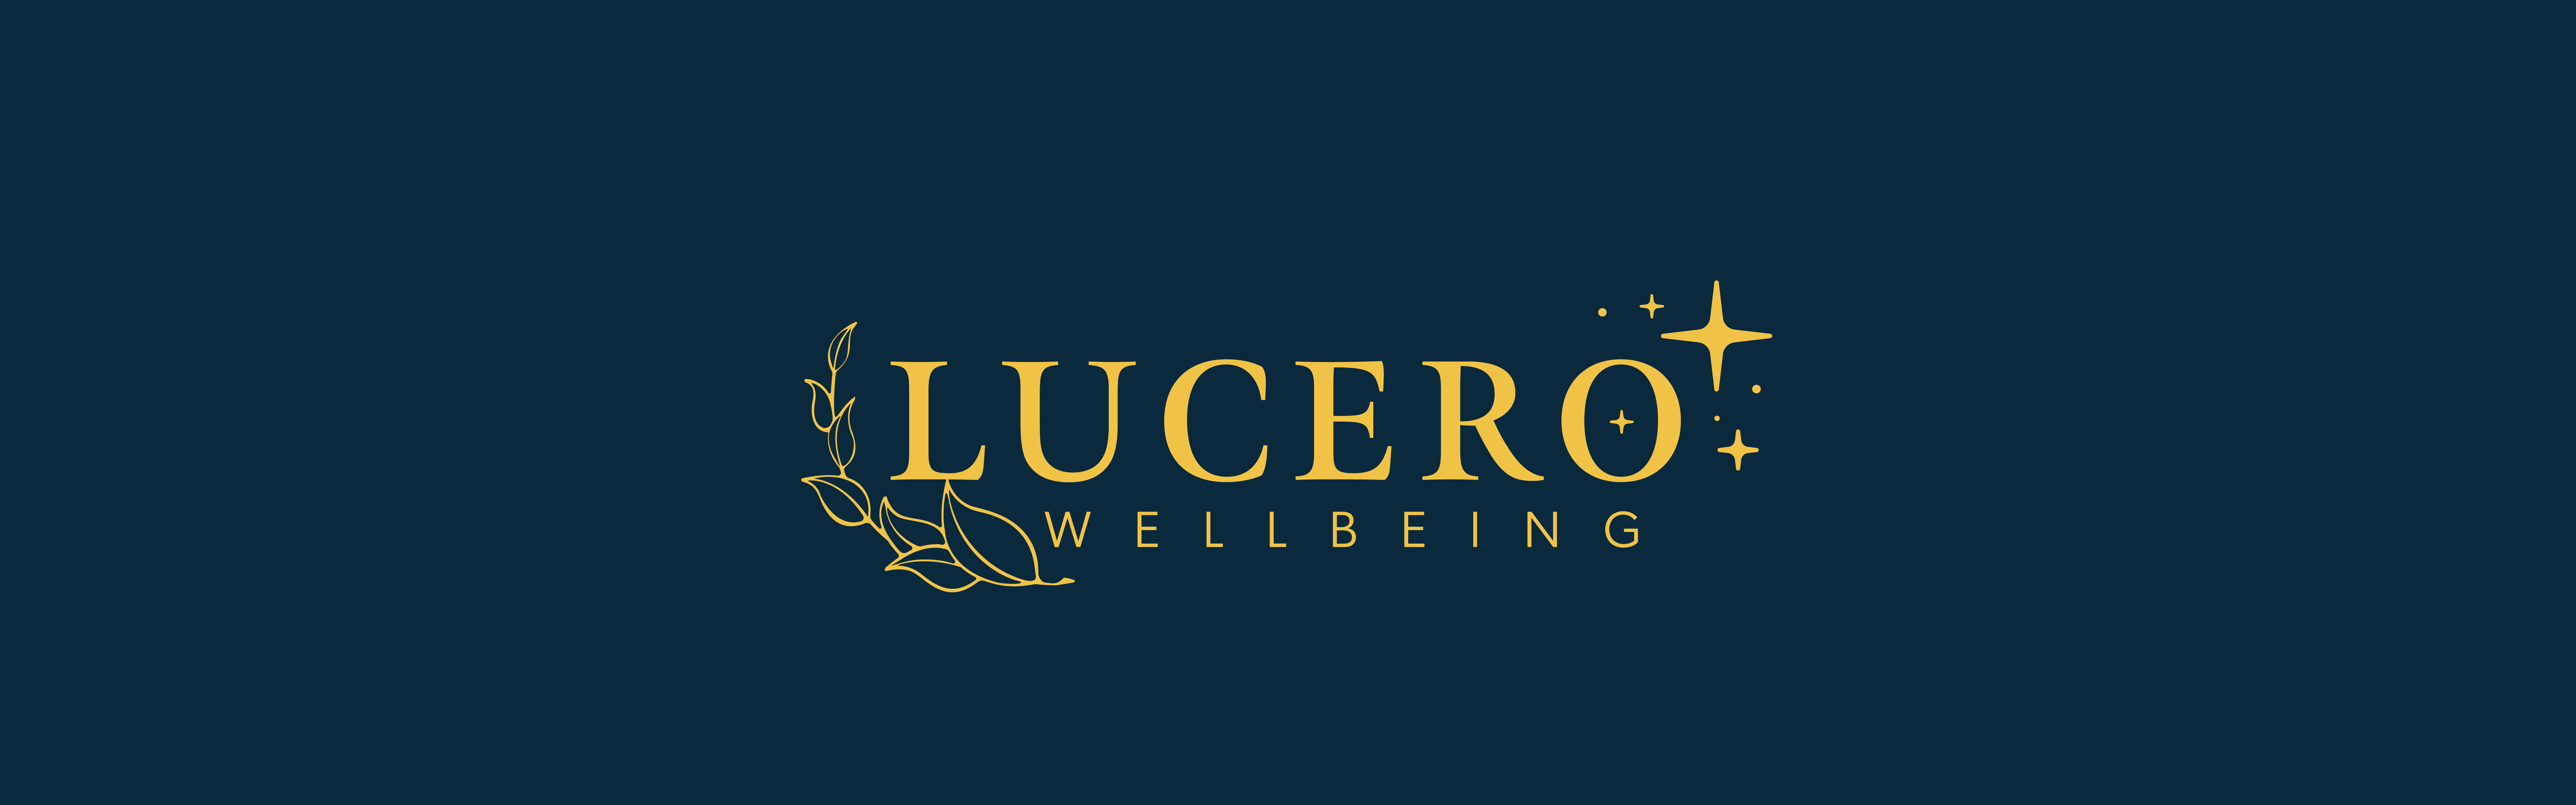 Lucero Wellbeing | Daor Design